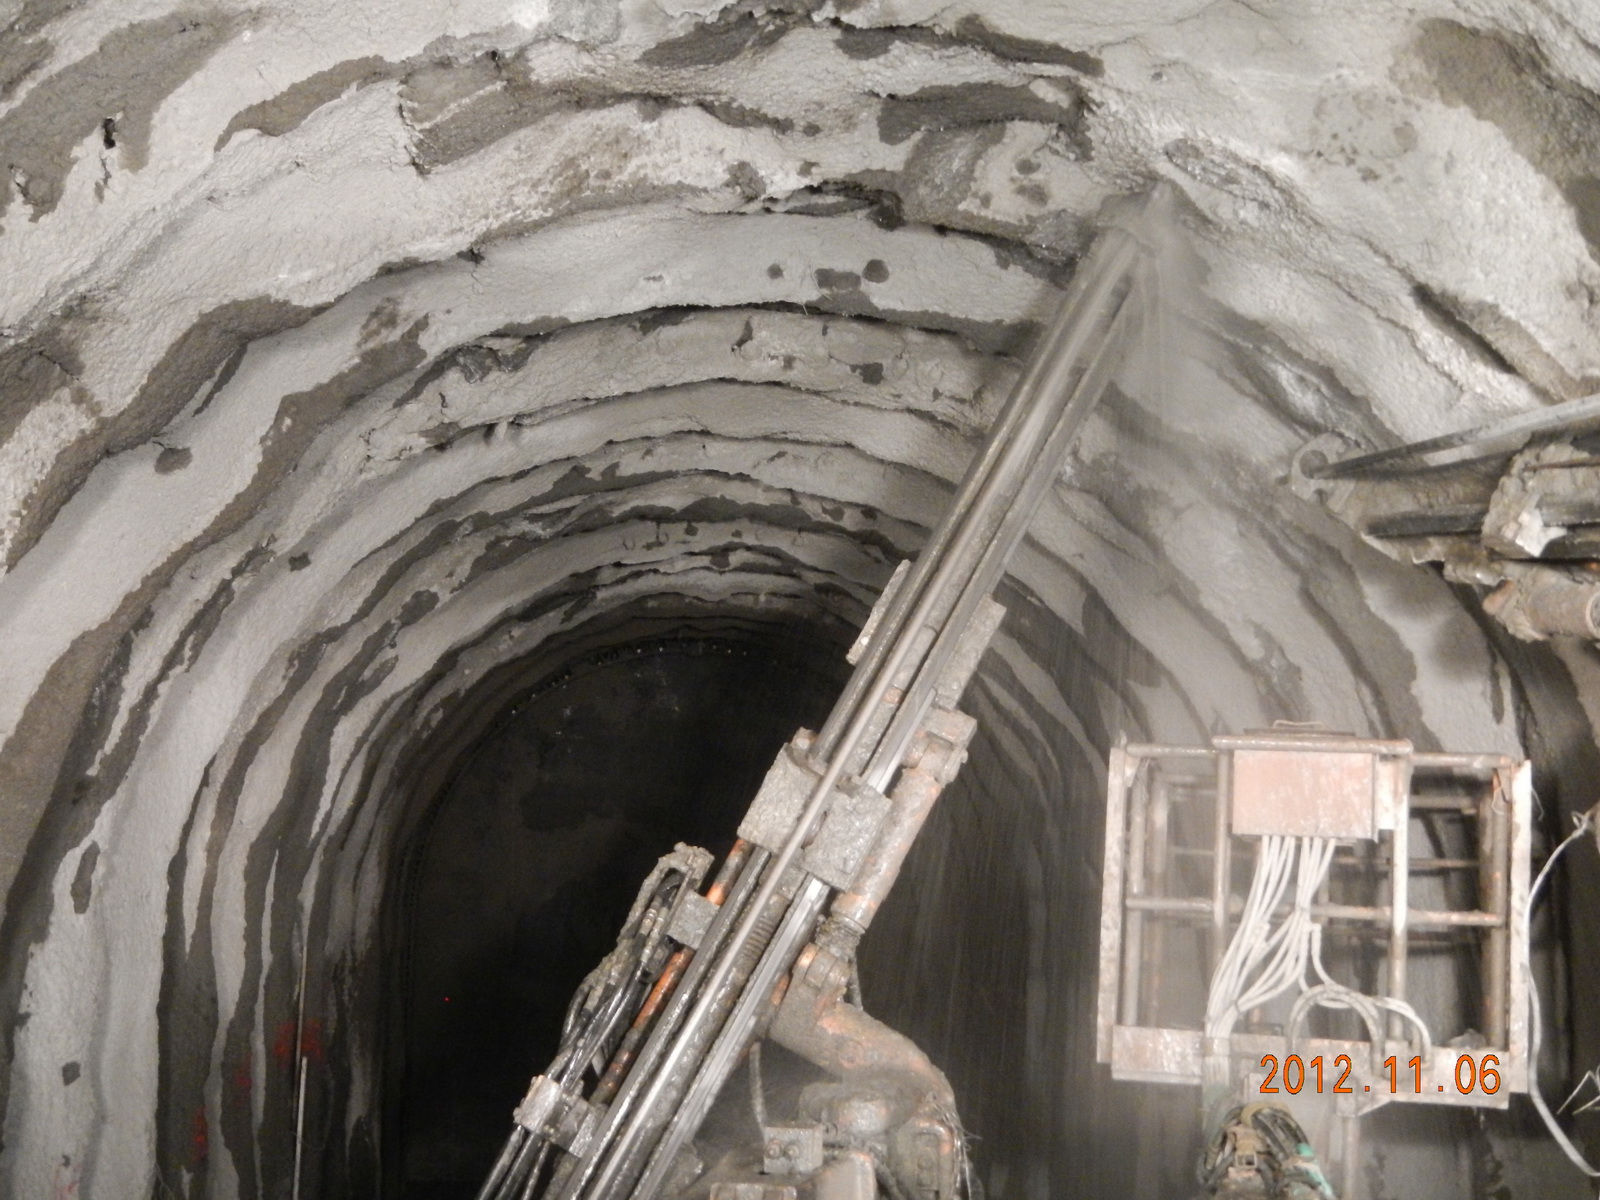 隧道入口段第448~451輪SN岩栓打設